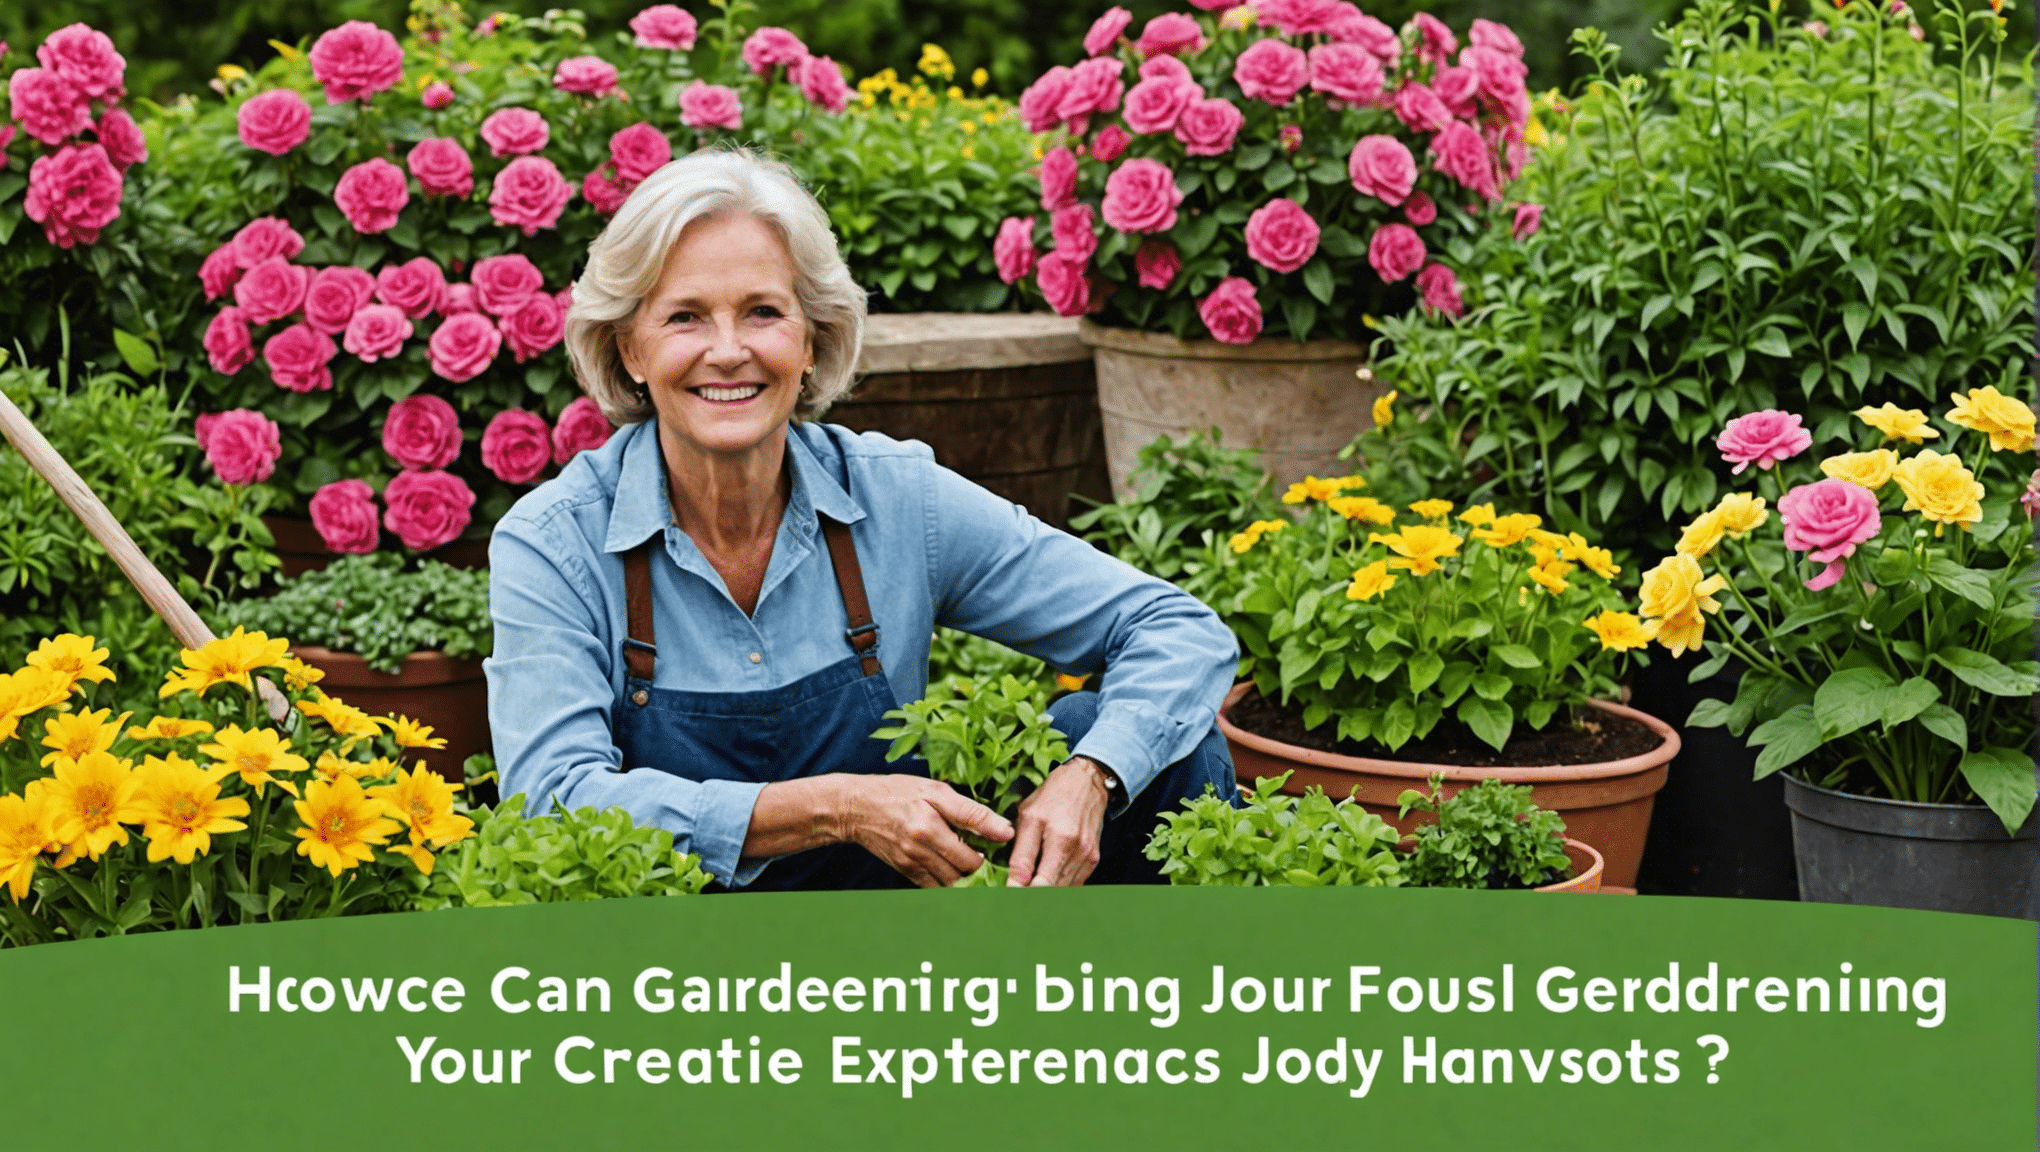 scopri come le idee del diario di giardinaggio possono migliorare e arricchire il tuo viaggio nel giardinaggio. esplora i vantaggi e i suggerimenti per migliorare la tua esperienza di giardinaggio.